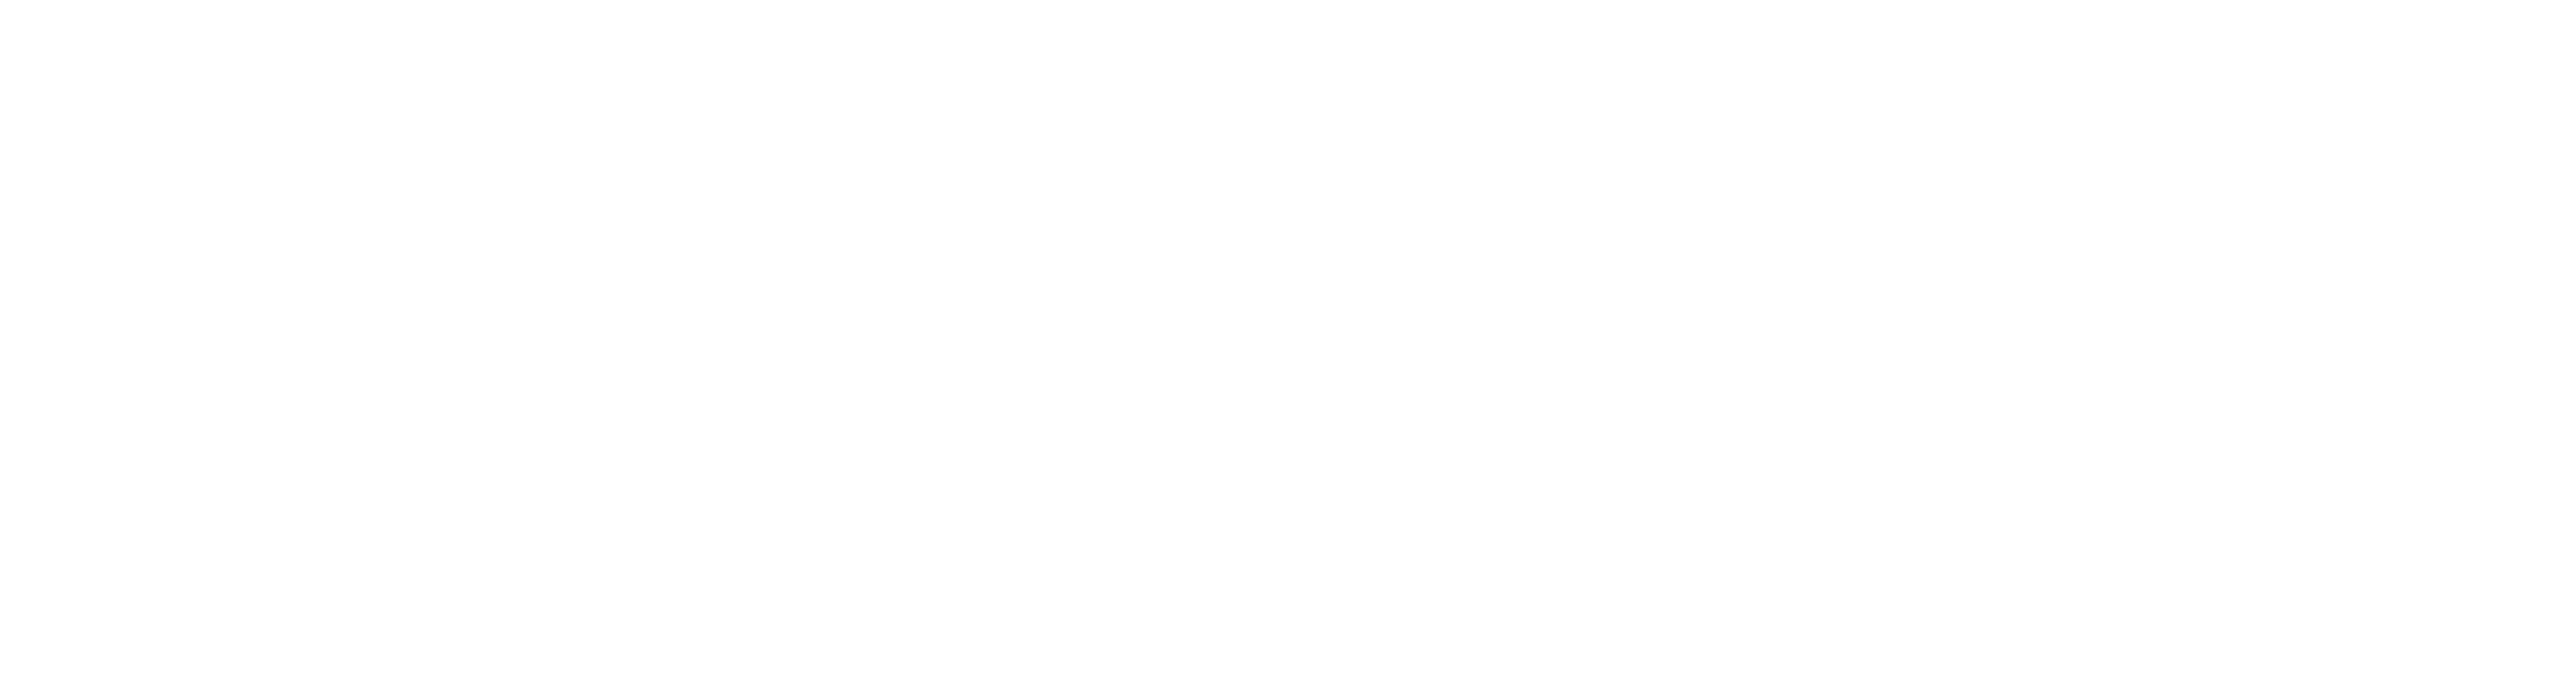 Georges Colleuil - École internationale du Référentiel